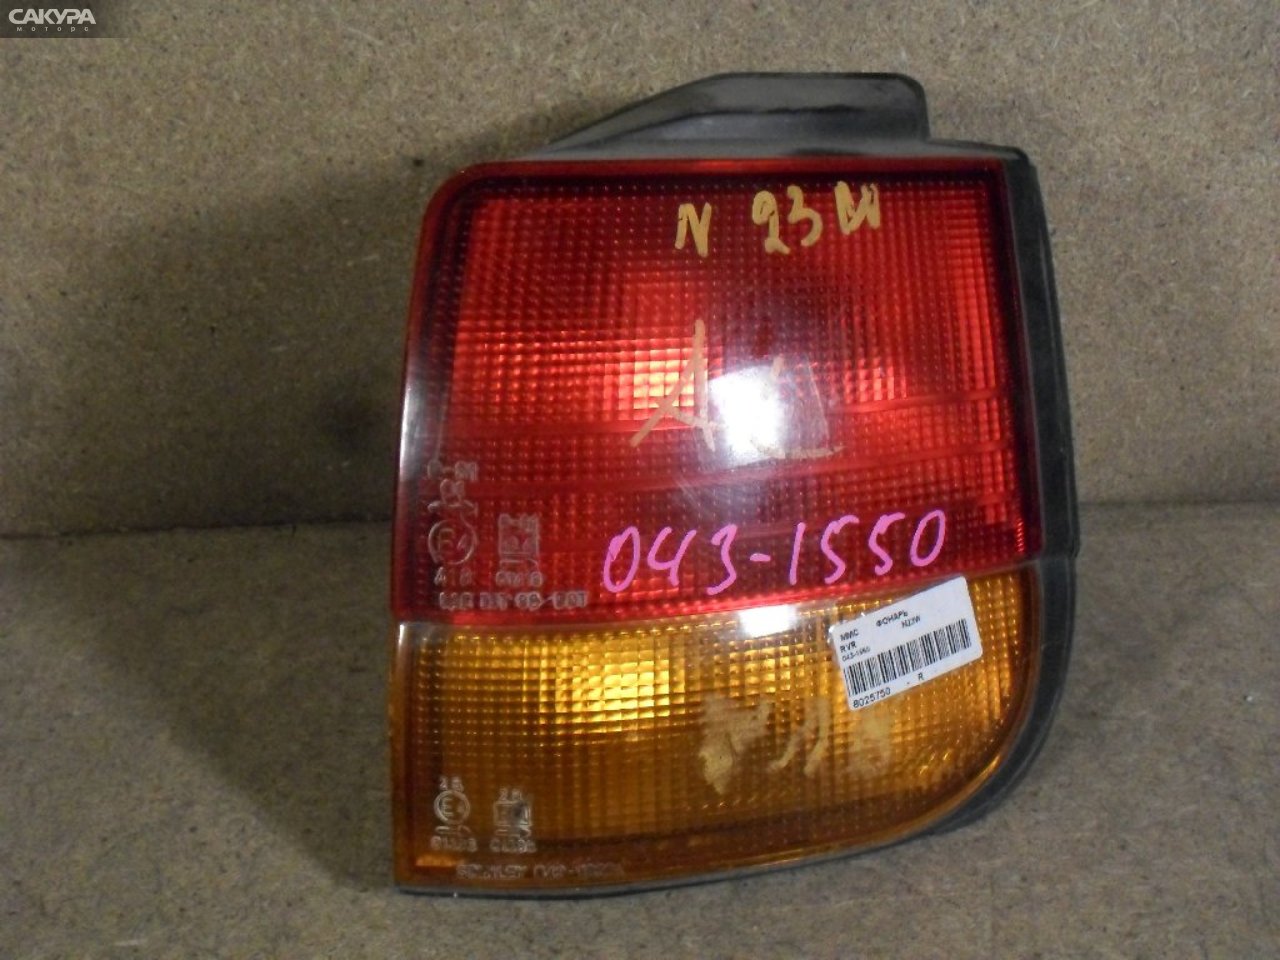 Фонарь стоп-сигнала правый Mitsubishi RVR N23W 043-1550: купить в Сакура Абакан.